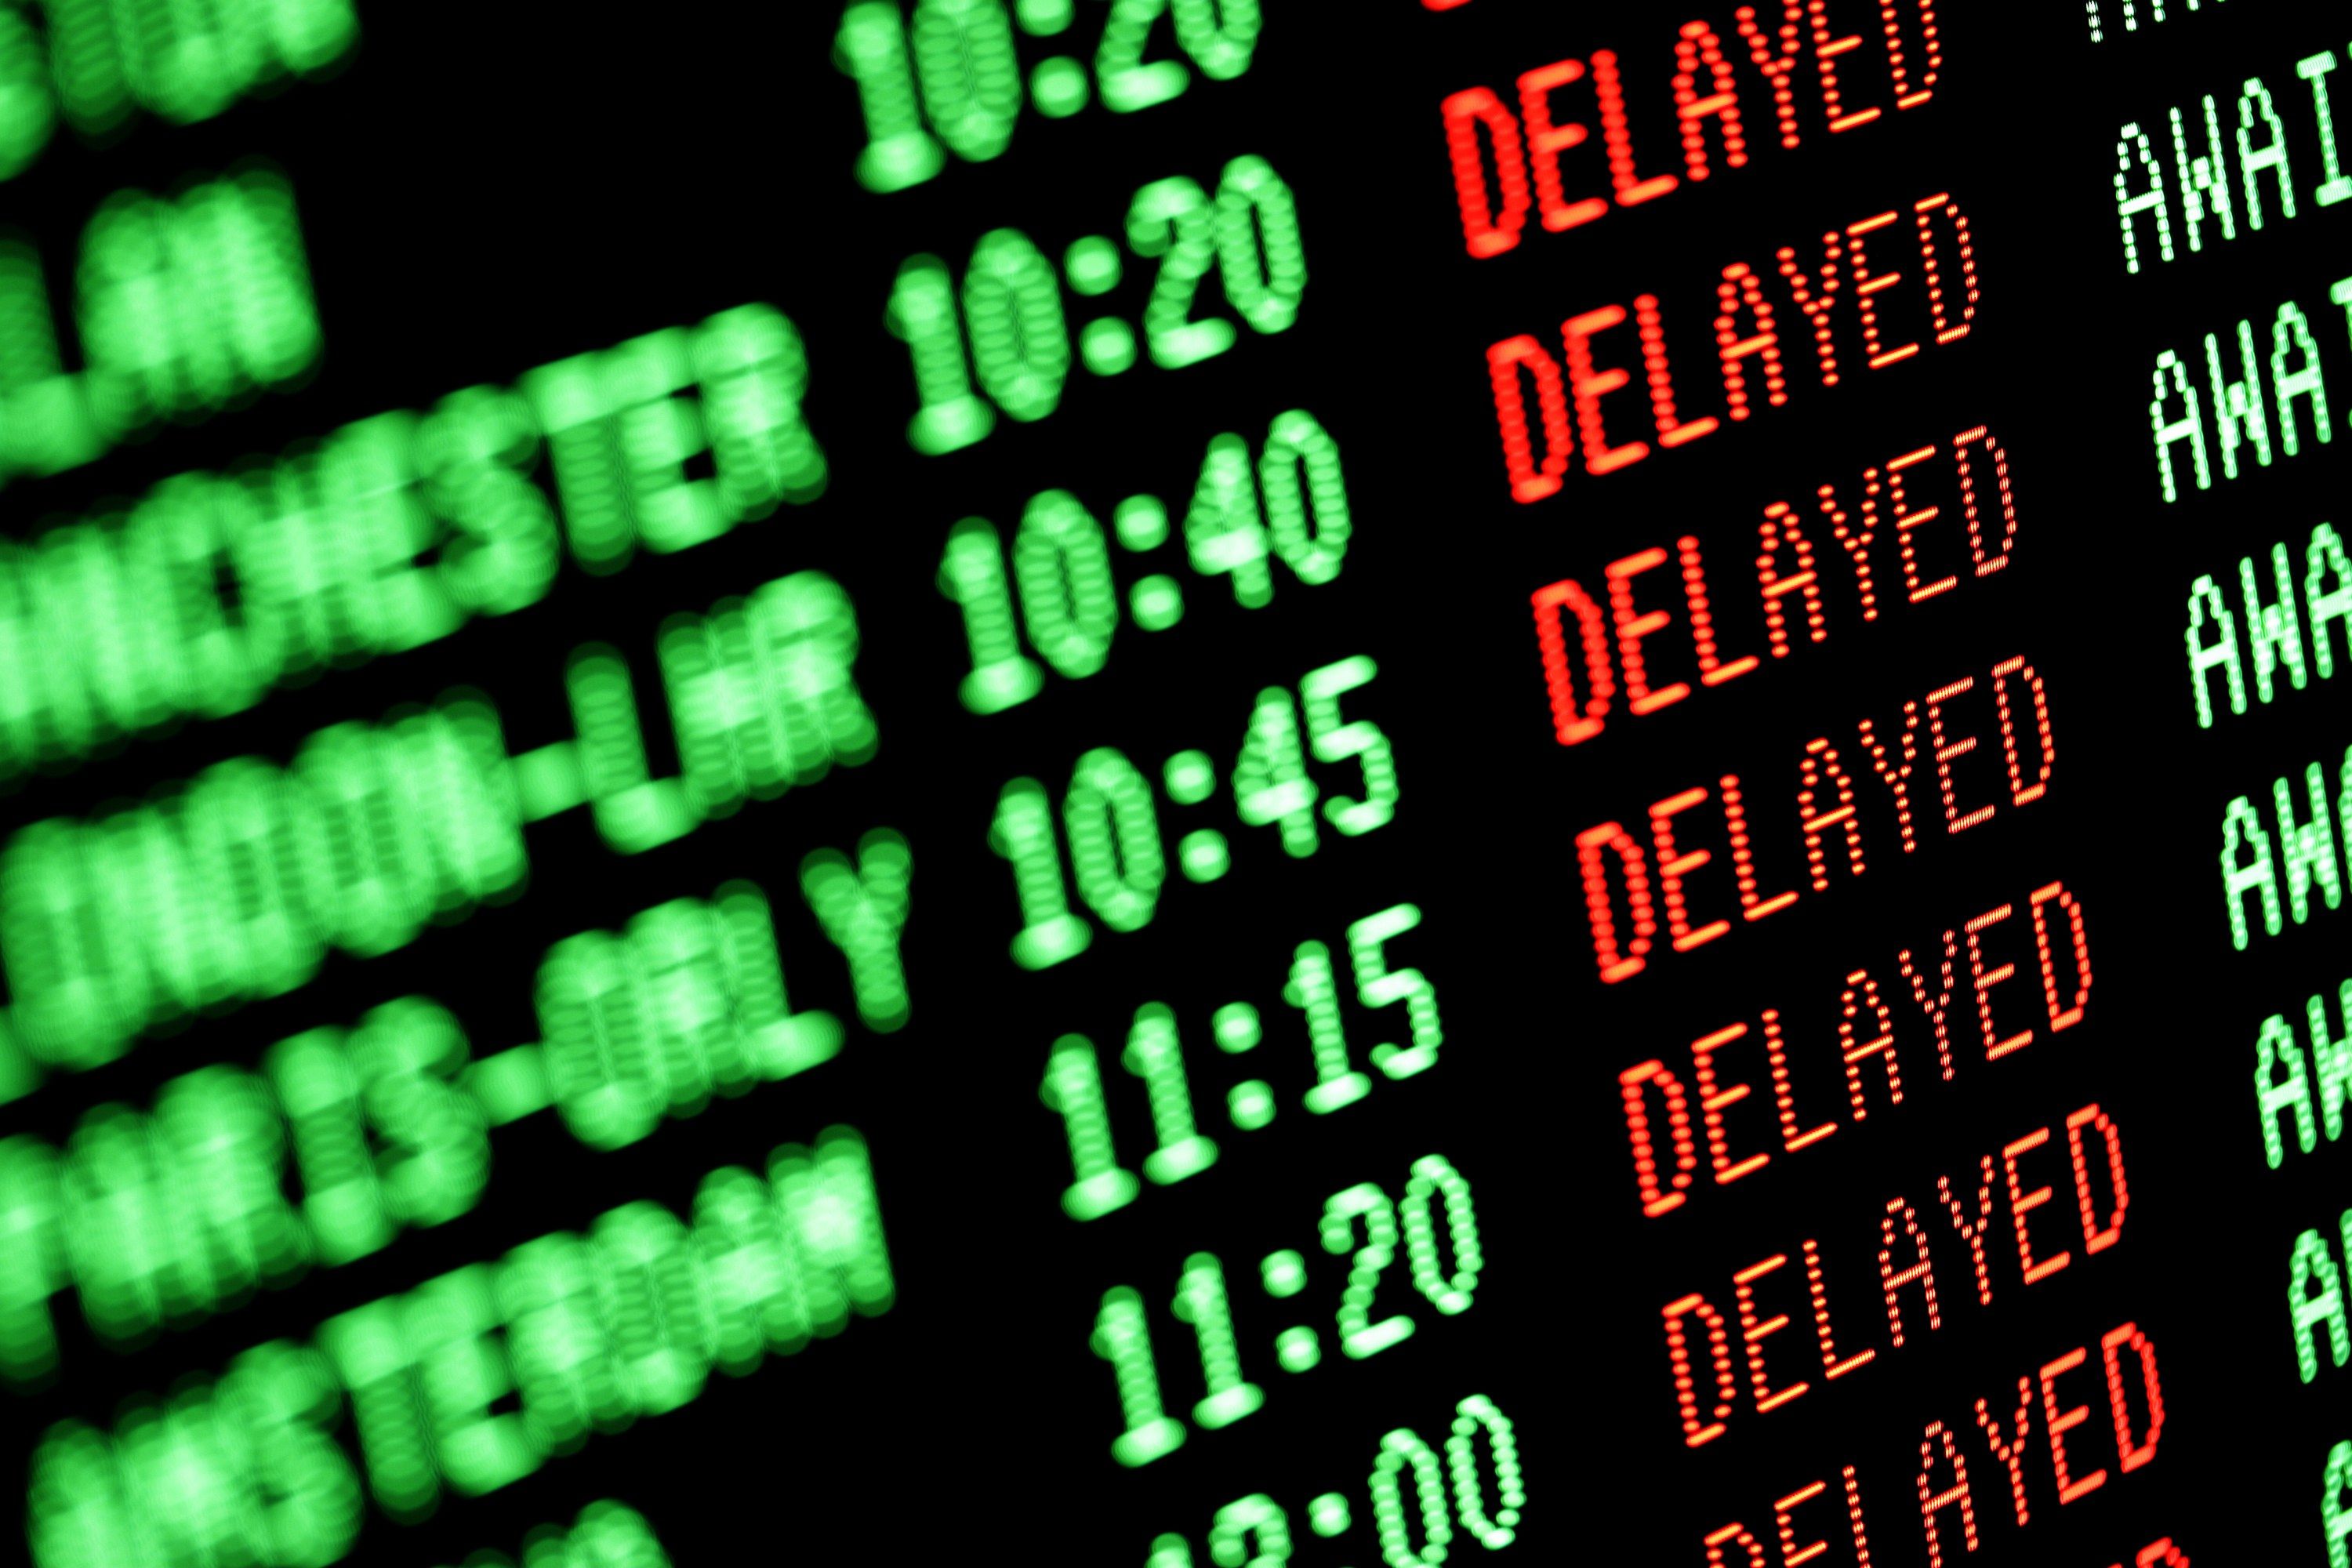 Greve do controle de trafego aereo causa atrasos e cancelamentos